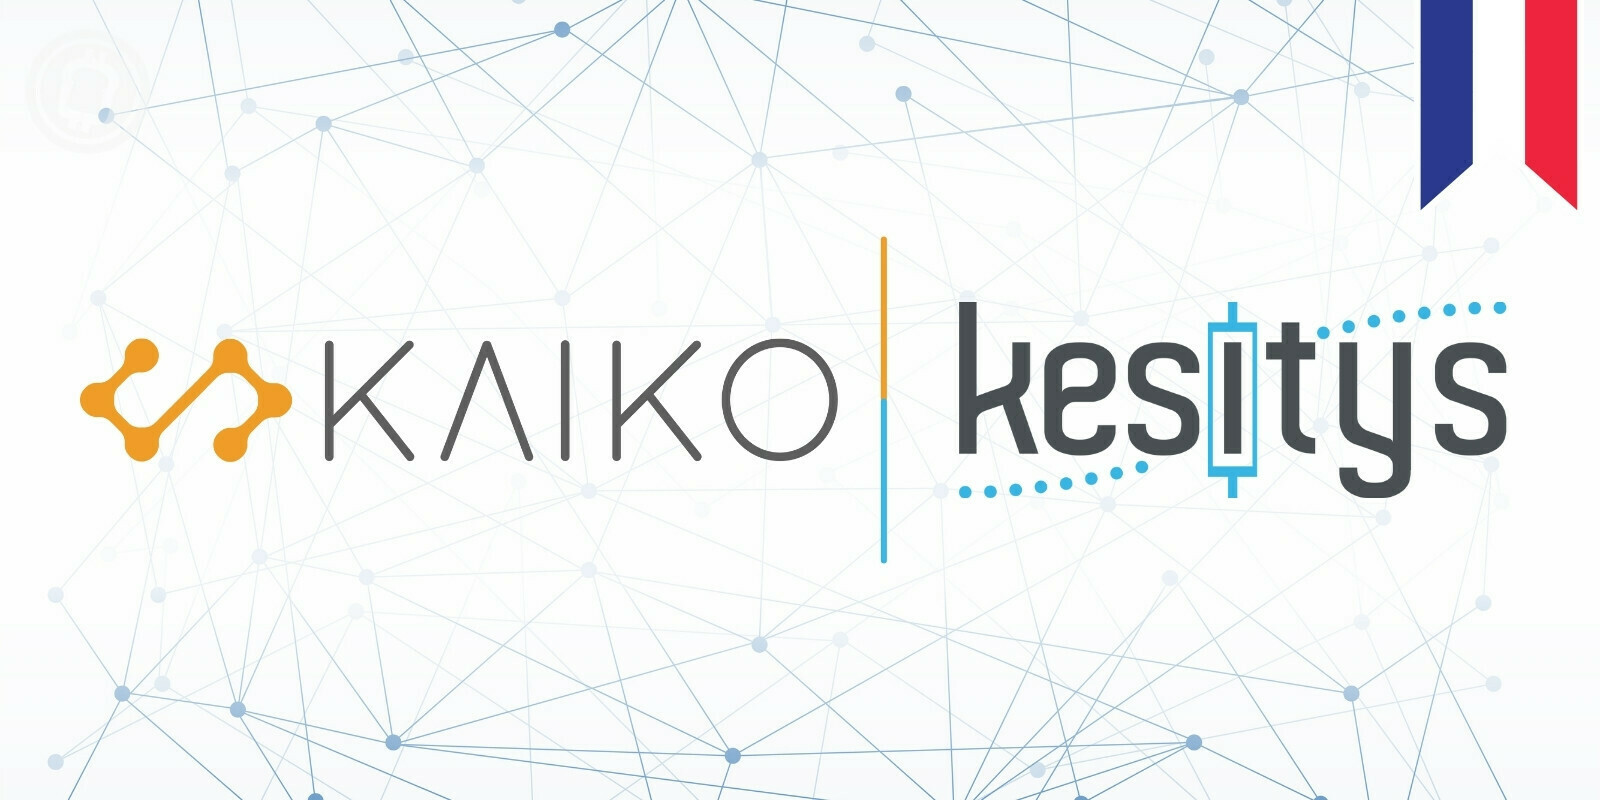 L'entreprise française Kaiko rachète Kesitys pour développer une branche d'analyse quantitative